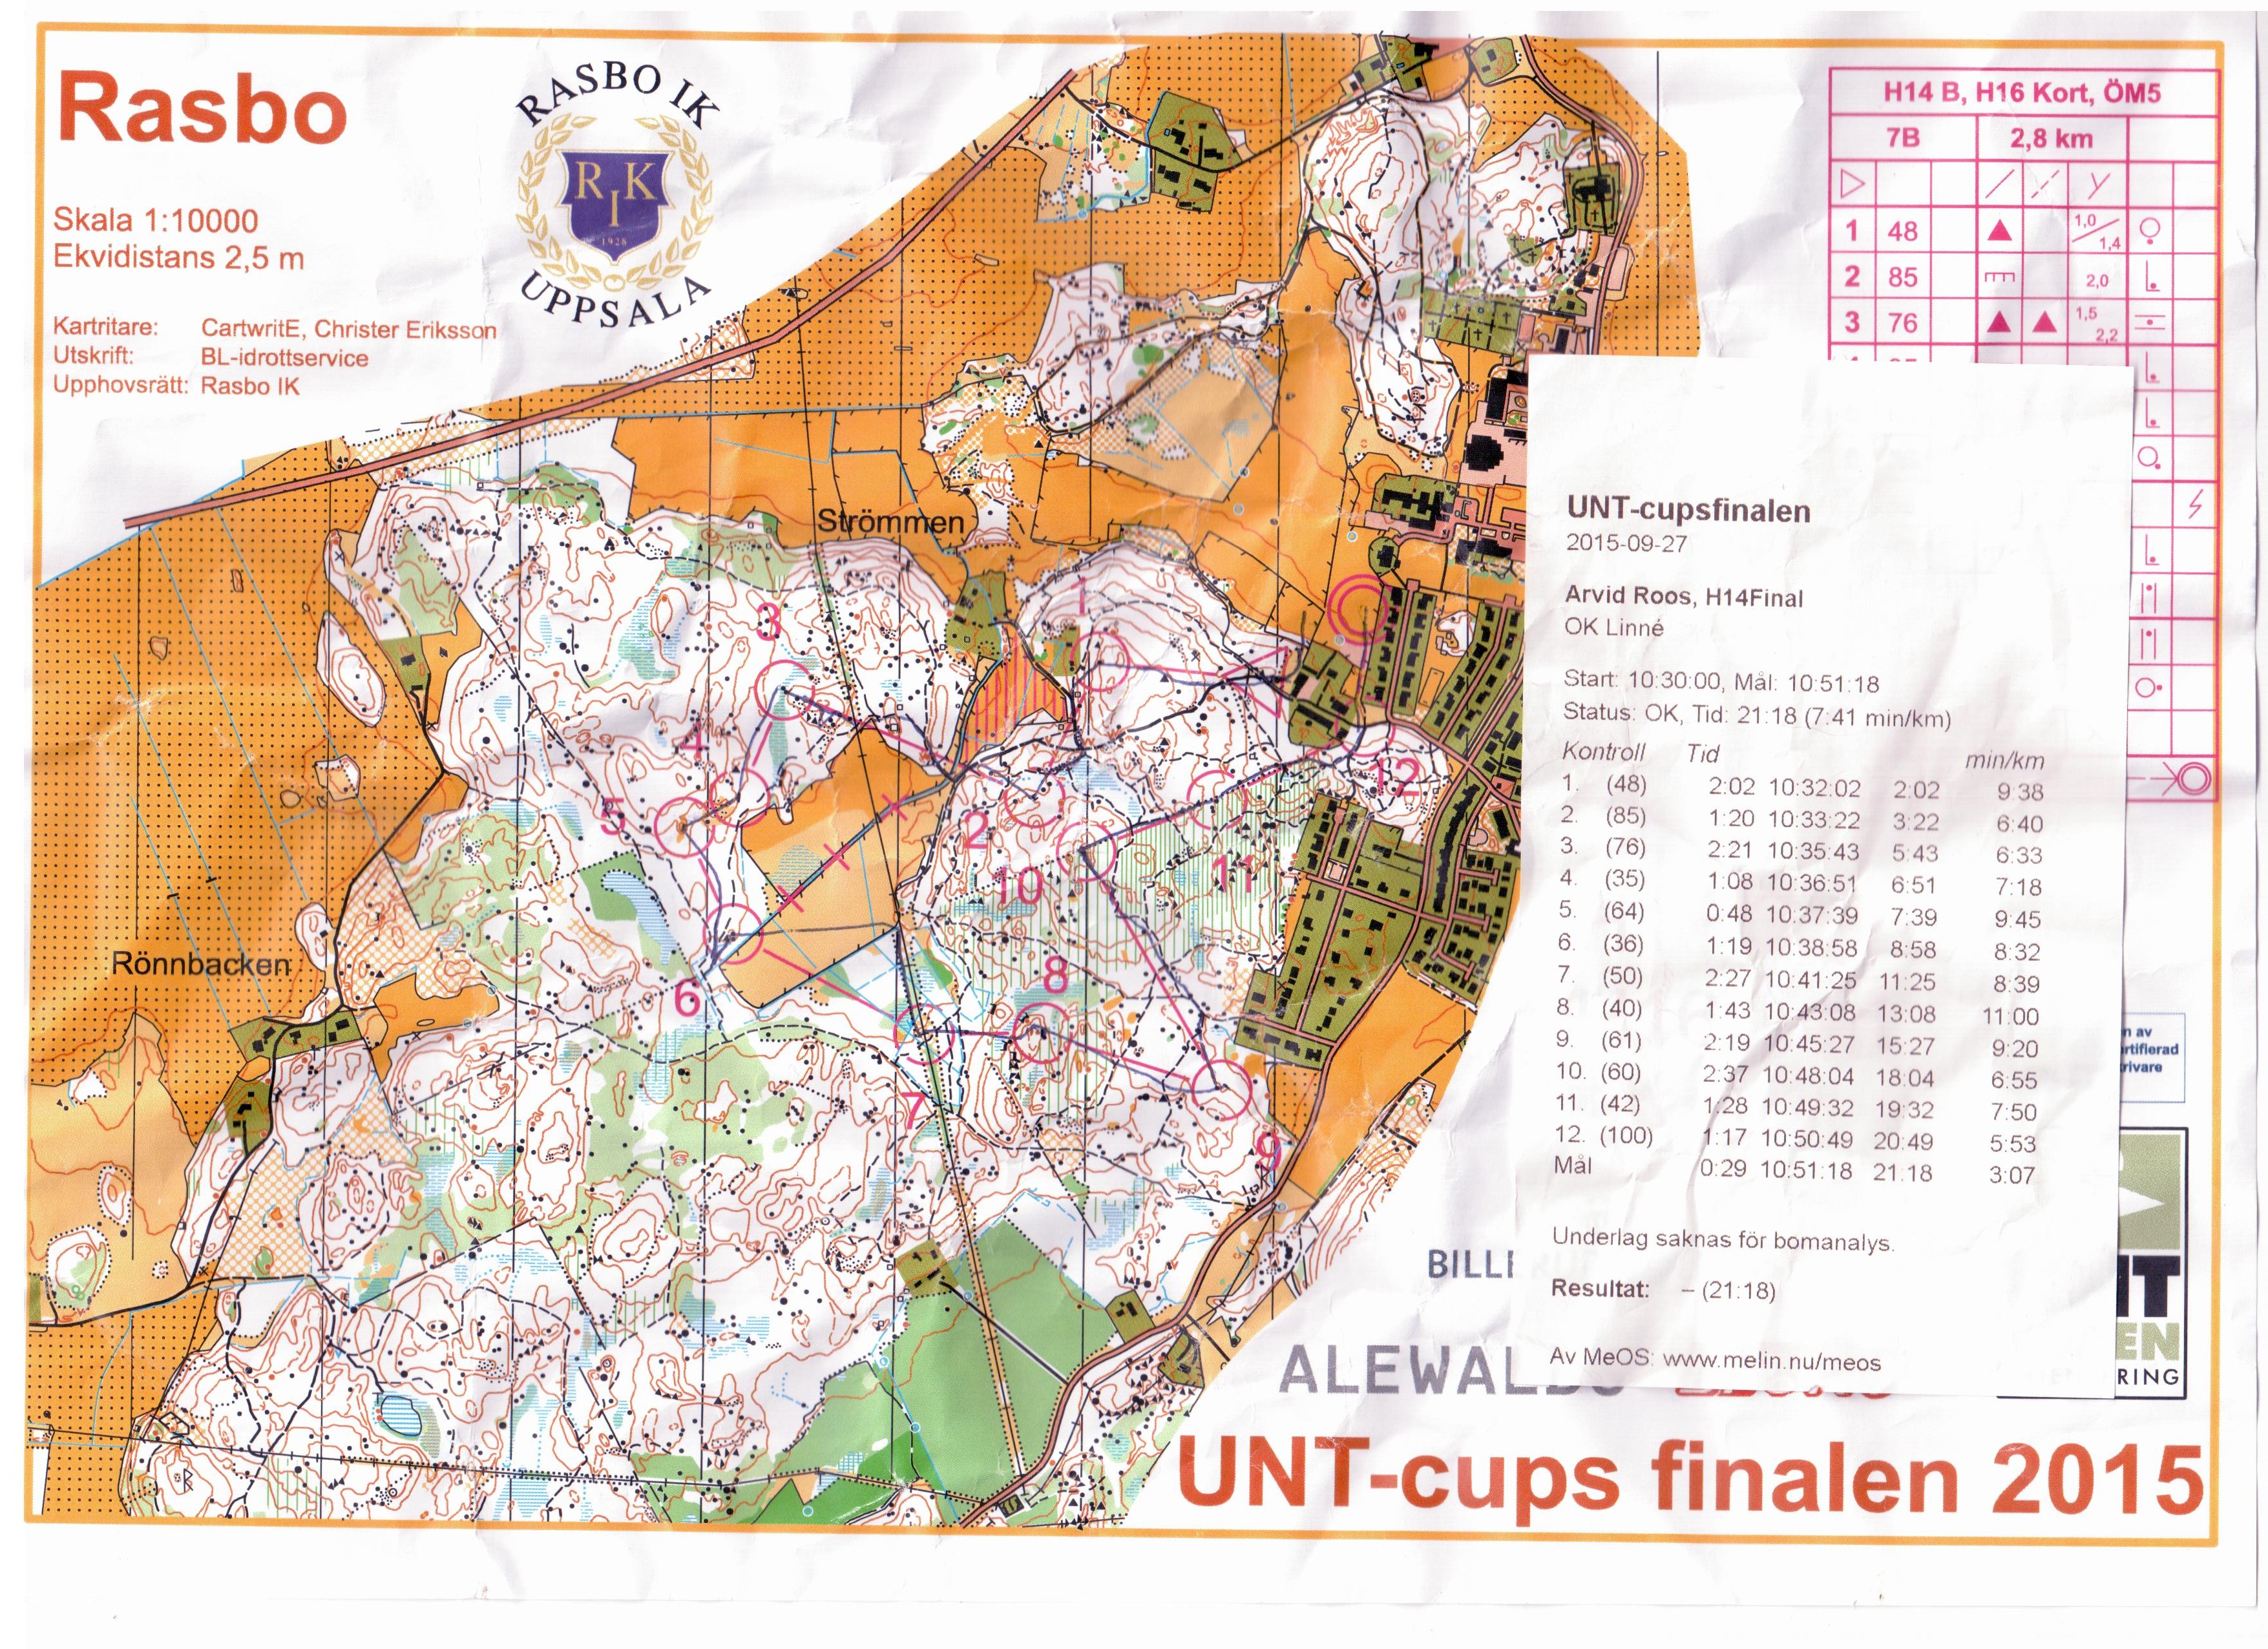 UNT-cups Final (2015-09-27)